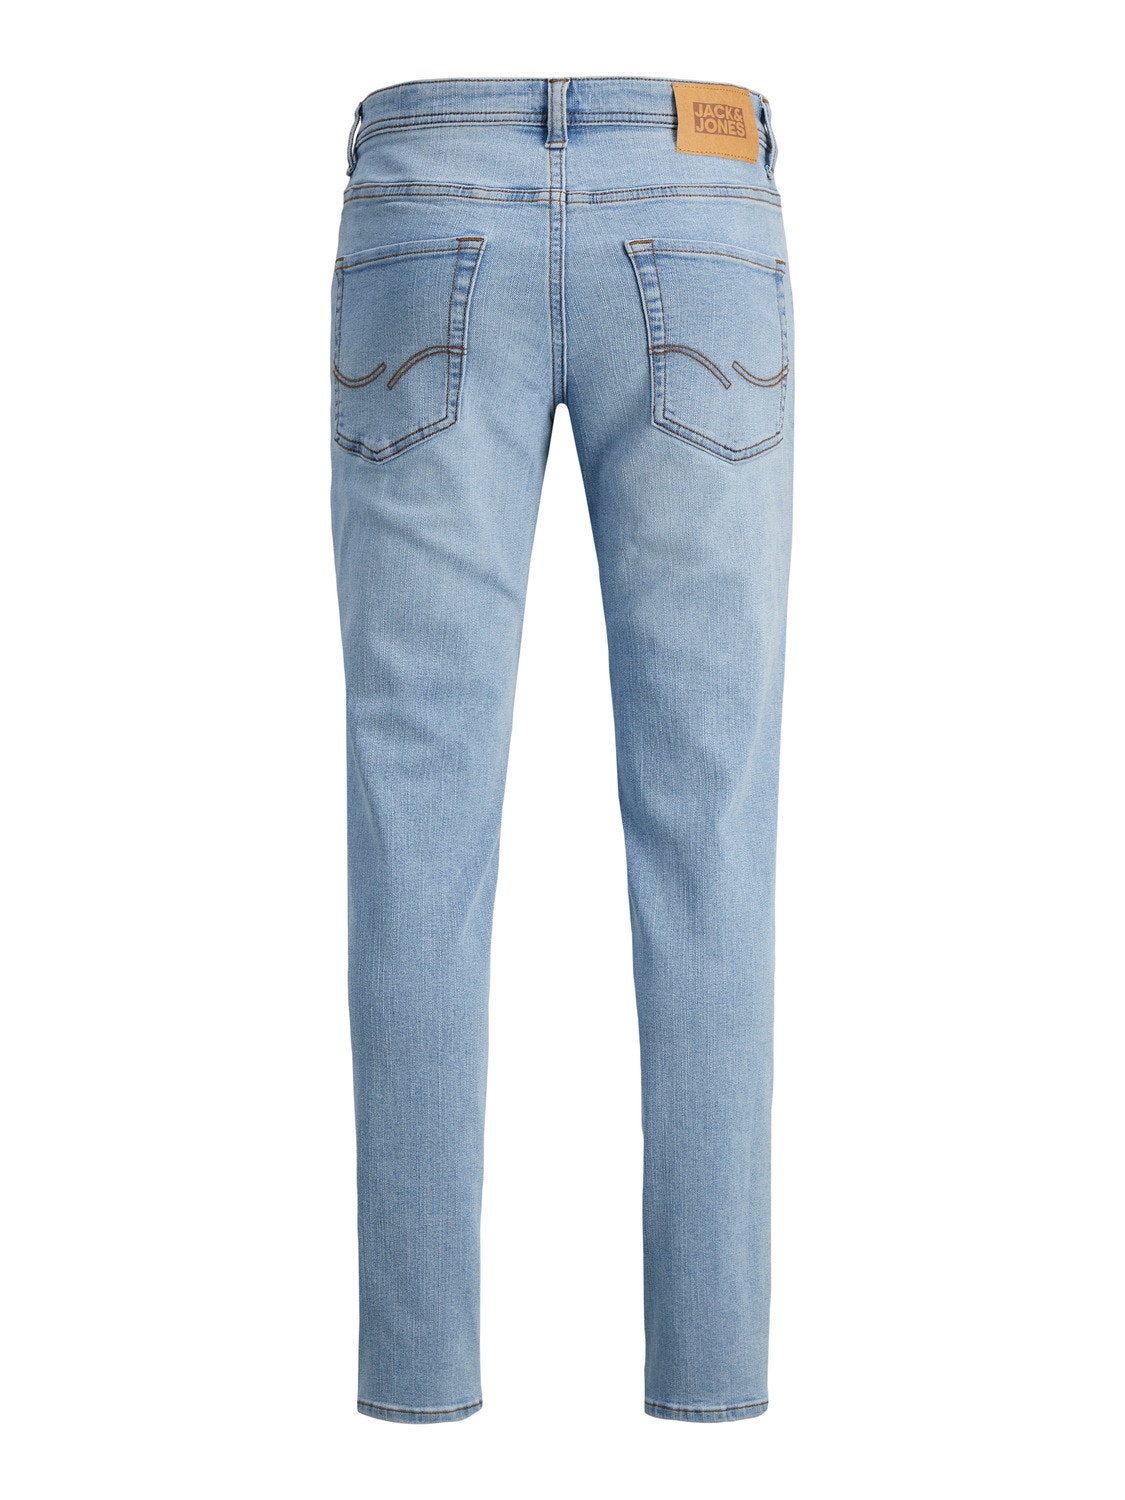 Jack & Jones JJIGLENN JJORIGINAL SQ 730 SN Slim Fit Jeans Für jungs -Blue Denim - 12249054